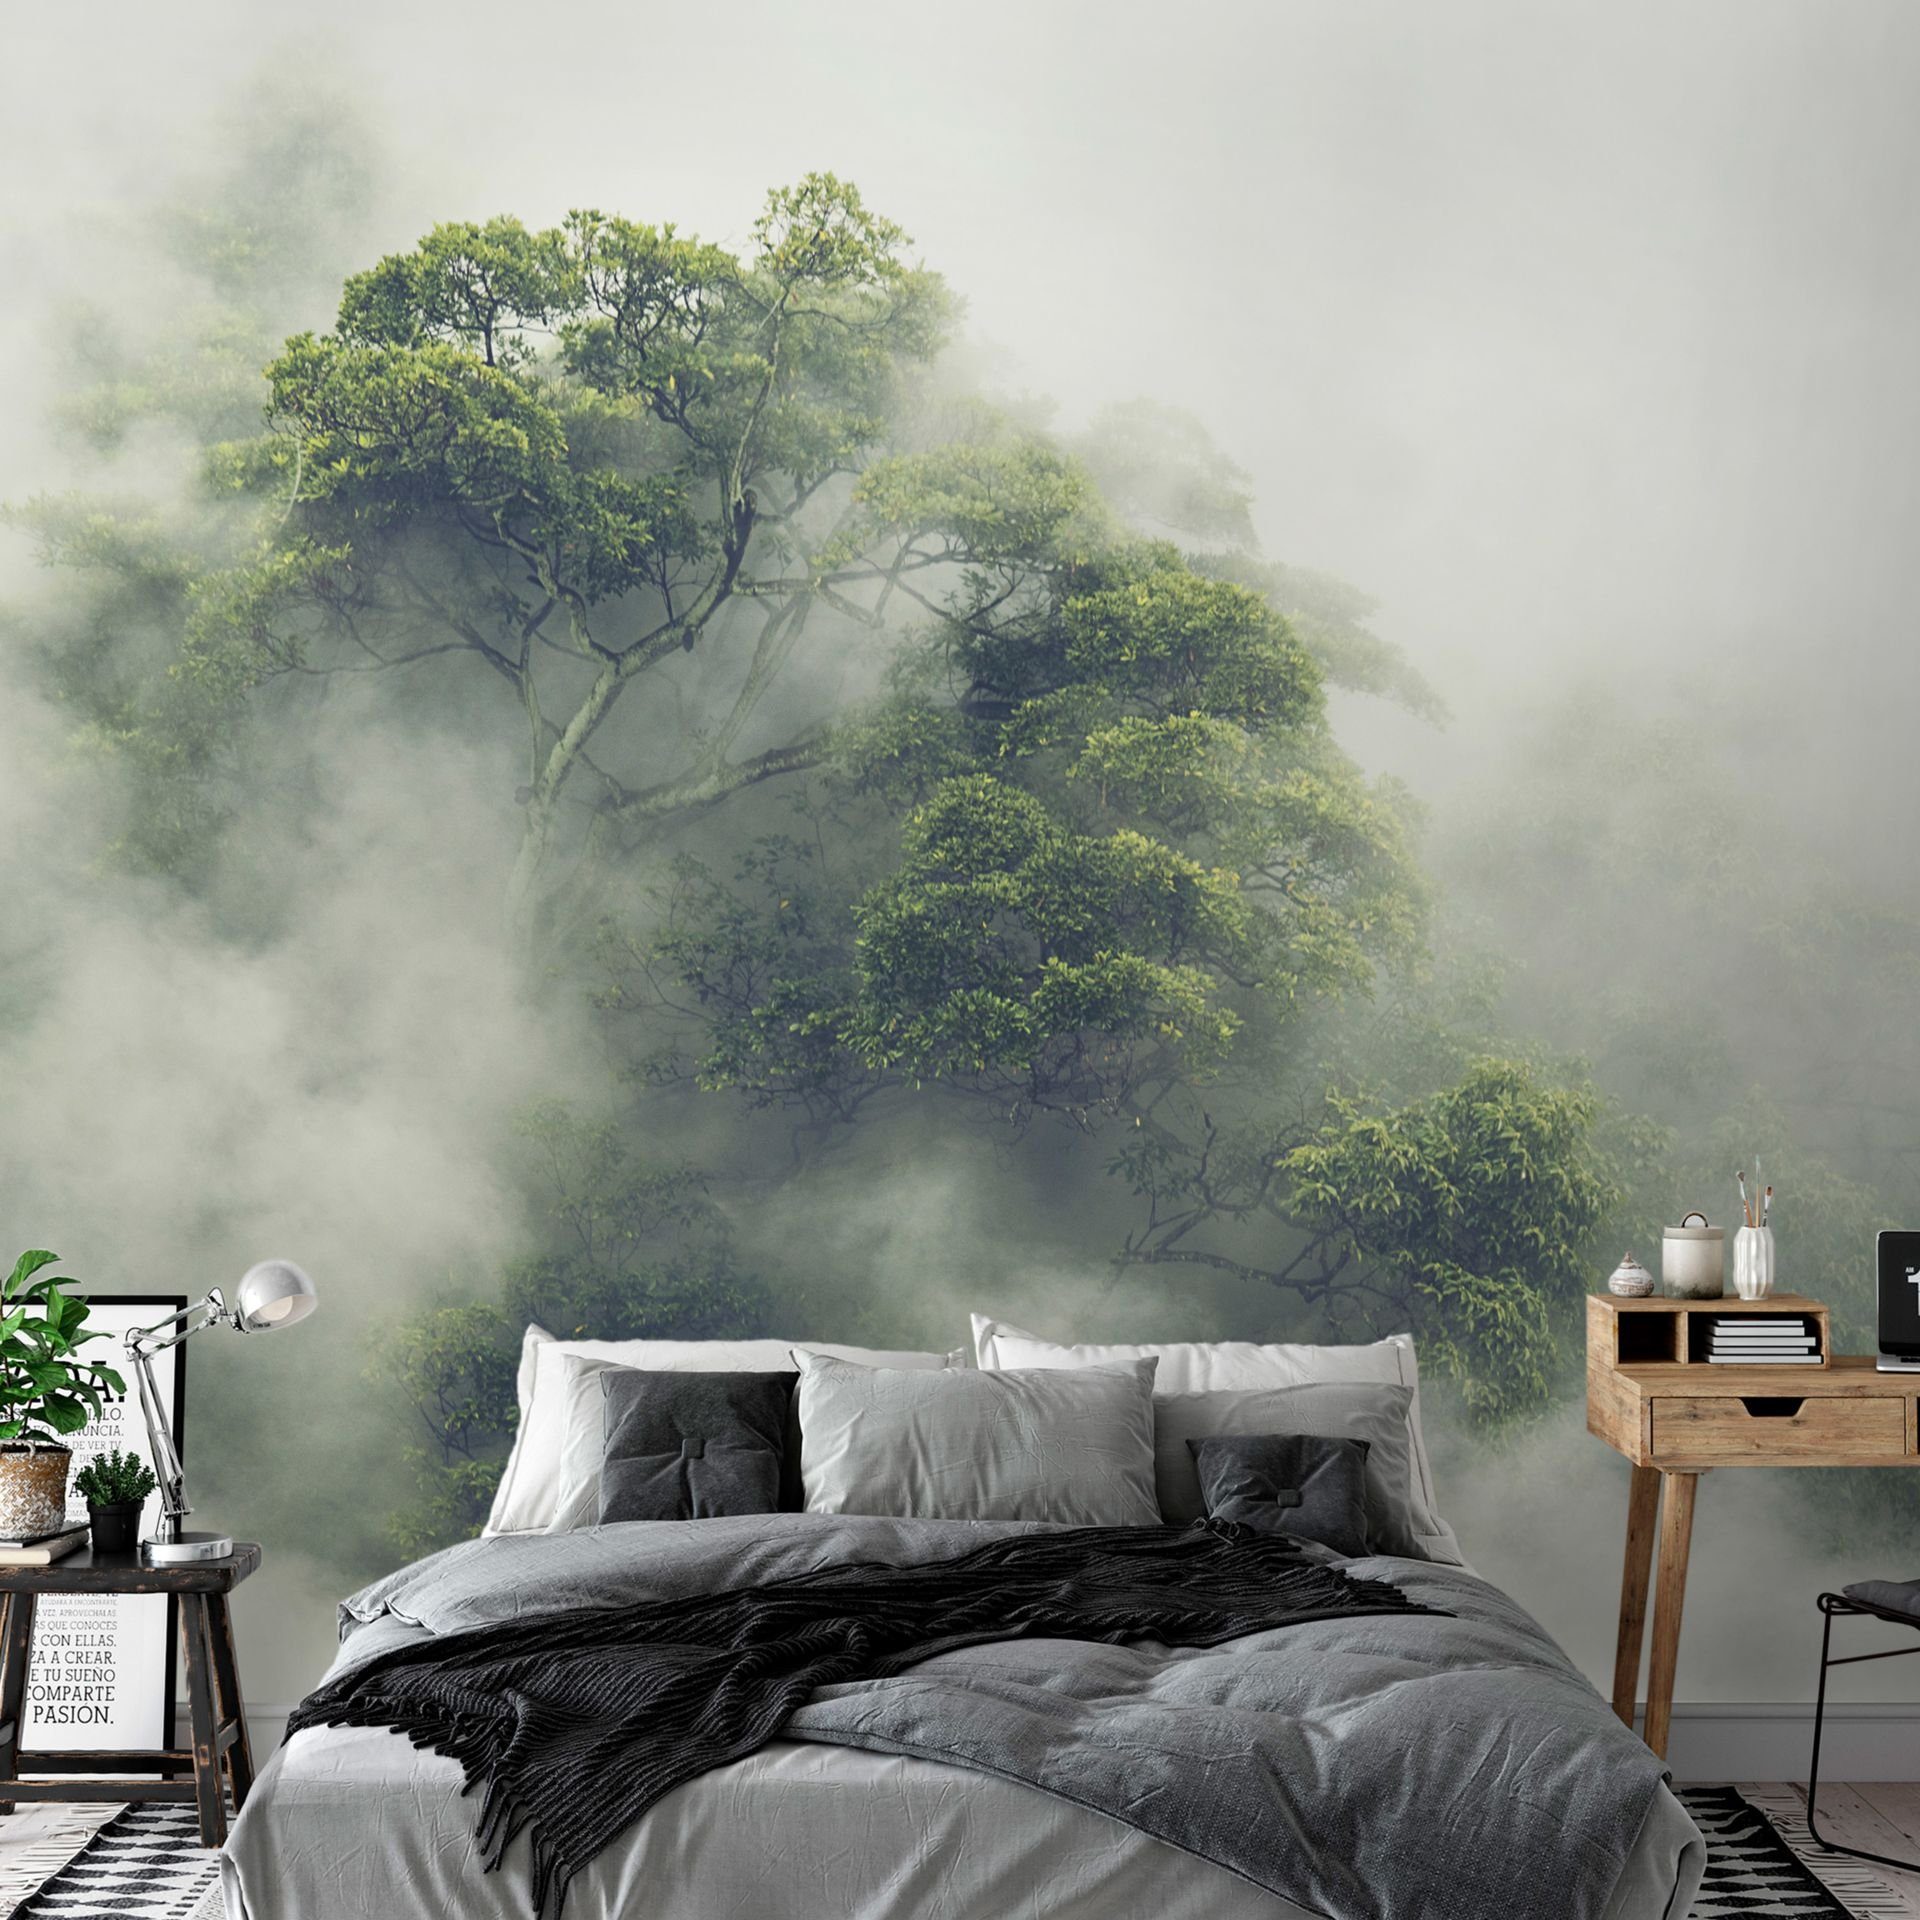 KUNSTLOFT Vliestapete Foggy Amazon 1x0.7 m, halb-matt, lichtbeständige Design Tapete